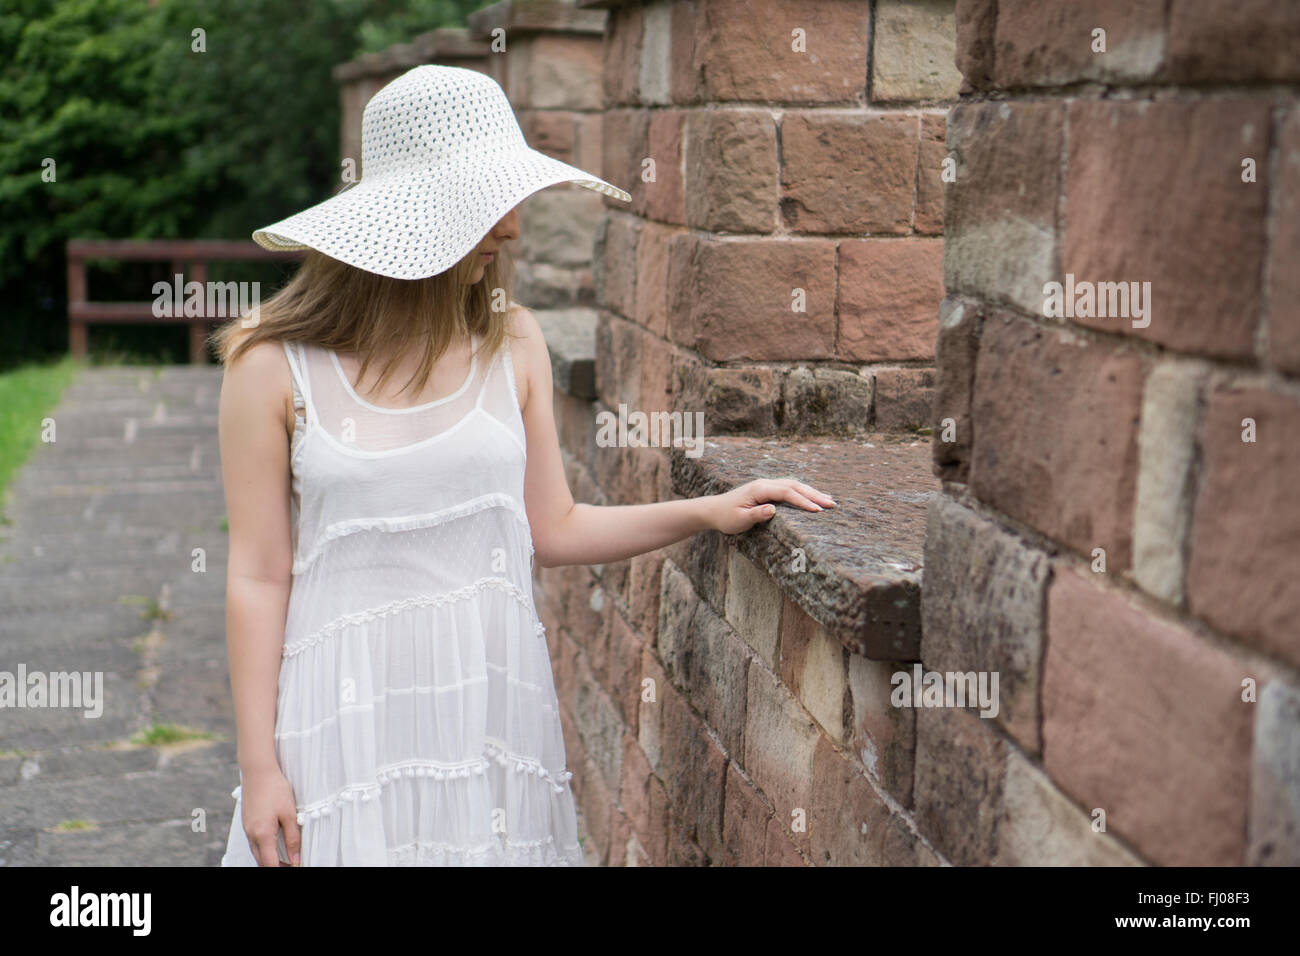 Femme seule dans une robe blanche standing outdoors Banque D'Images